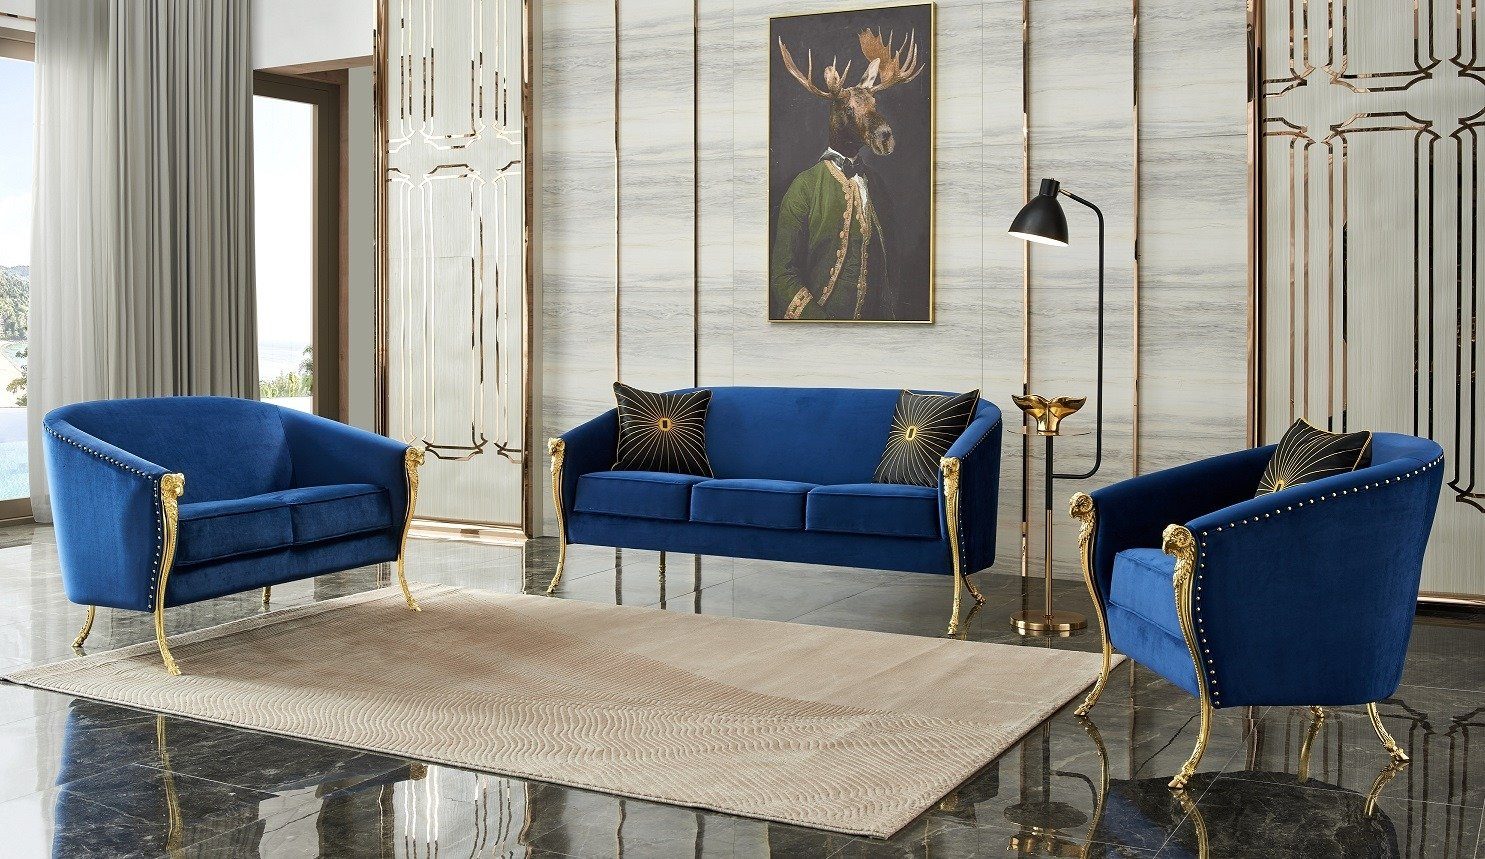 JVmoebel Sofa Luxus blaue Polstergarnitur 3+2+1 Sitz mit goldenen Füßen, Made in Europe